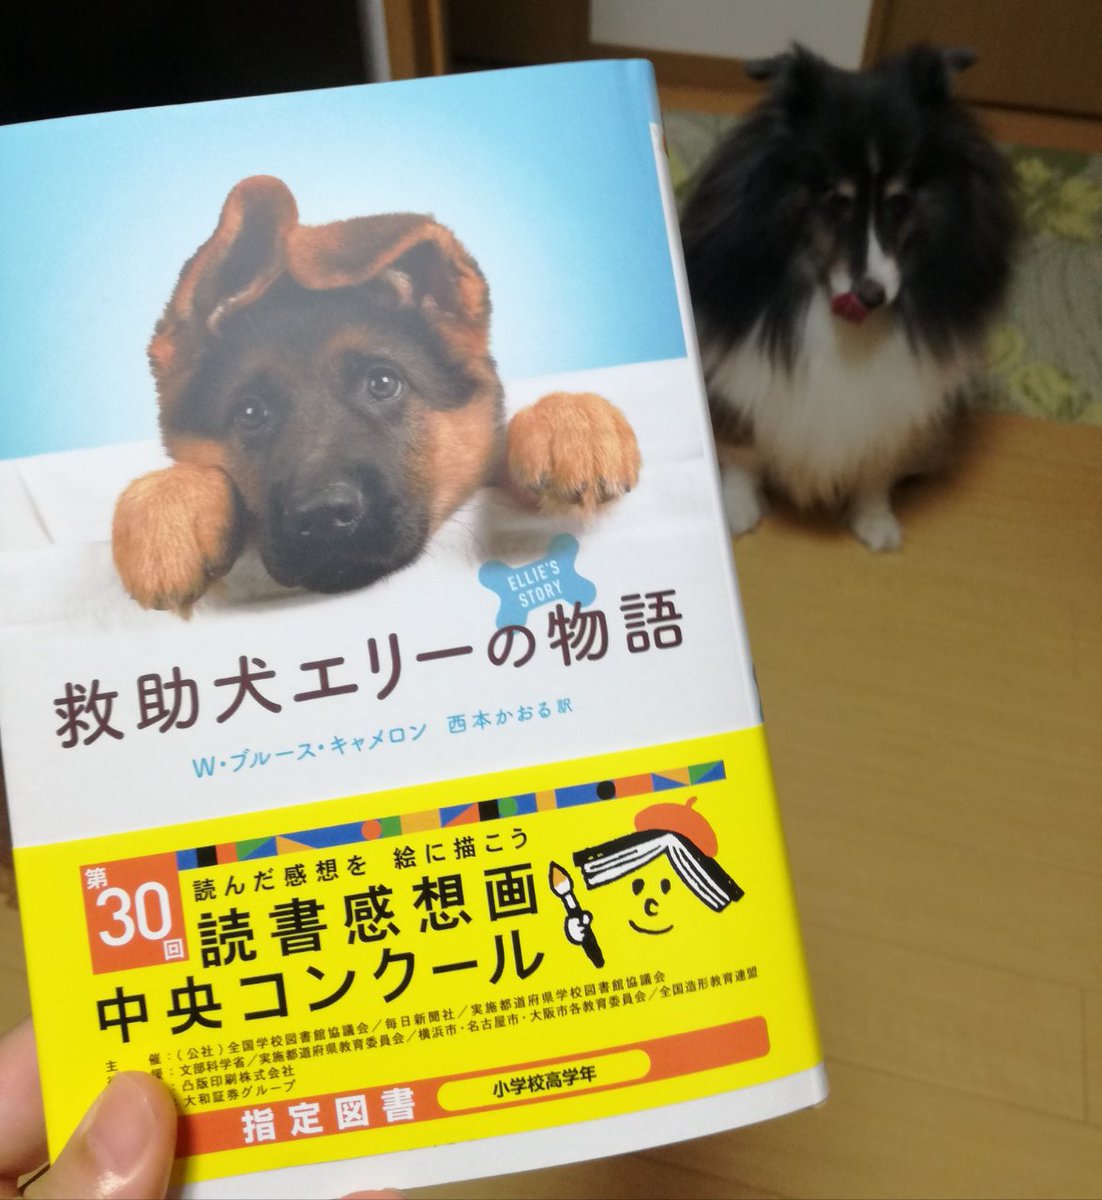 西本かおる Kaoru Nishimoto No Twitter 救助犬エリーの物語 小峰書店 3刷り決まったそうです ありがとうございます 感想画コンクールの小学高学年の指定図書ですが 犬好き大人にも楽しんでいただける本です 犬のエリーが自分が生まれてから老後までを